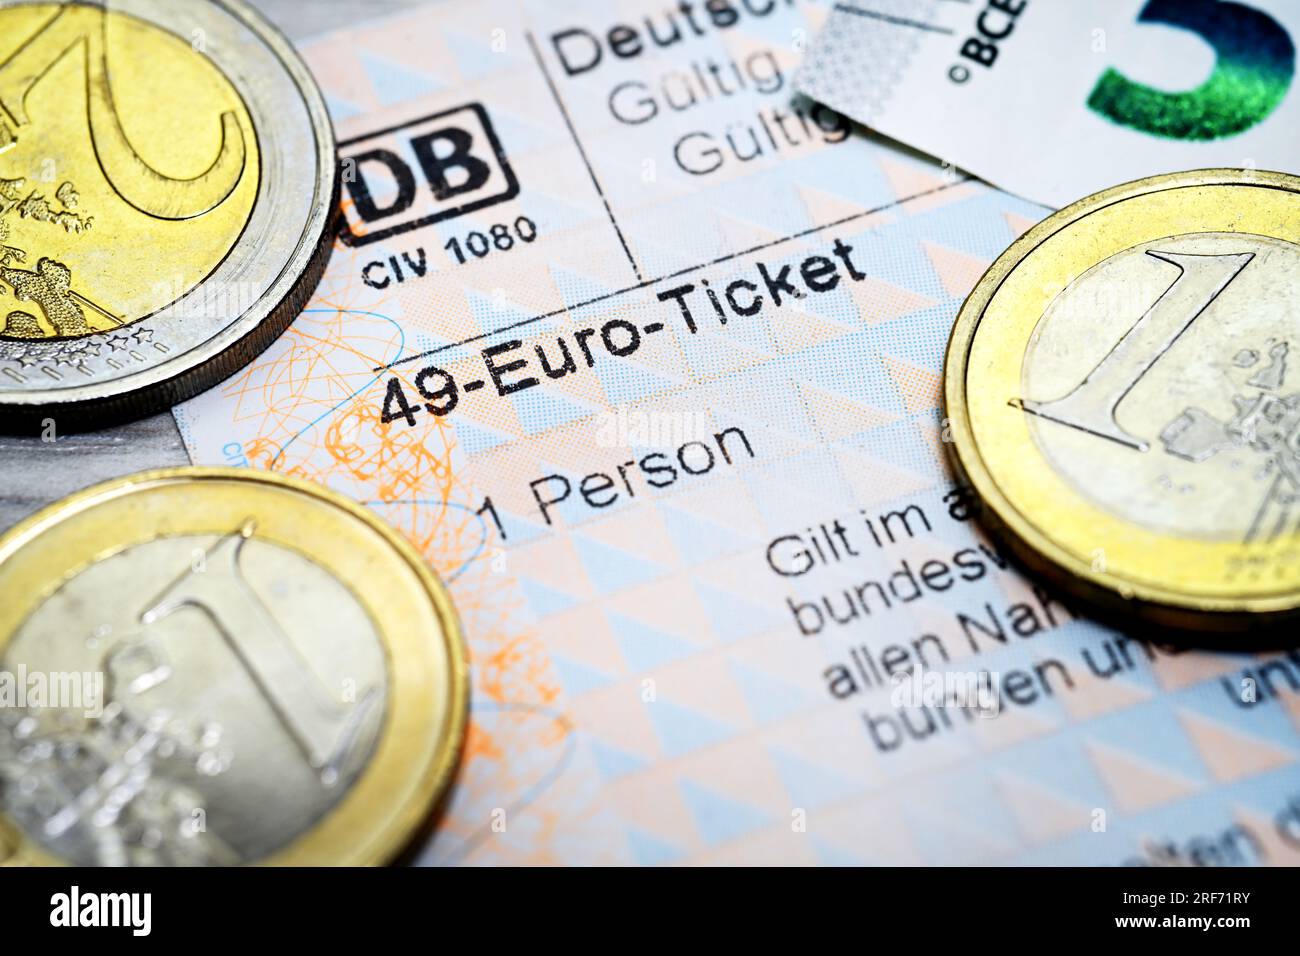 FOTOMONTAGE, Fahrschein mit Aufschrift 49-Euro-Ticket und Euromünzen, 49-Euro-Ticket als möglicher Nachfolger des Neun-Euro Biglietti, Symbolfoto Foto Stock